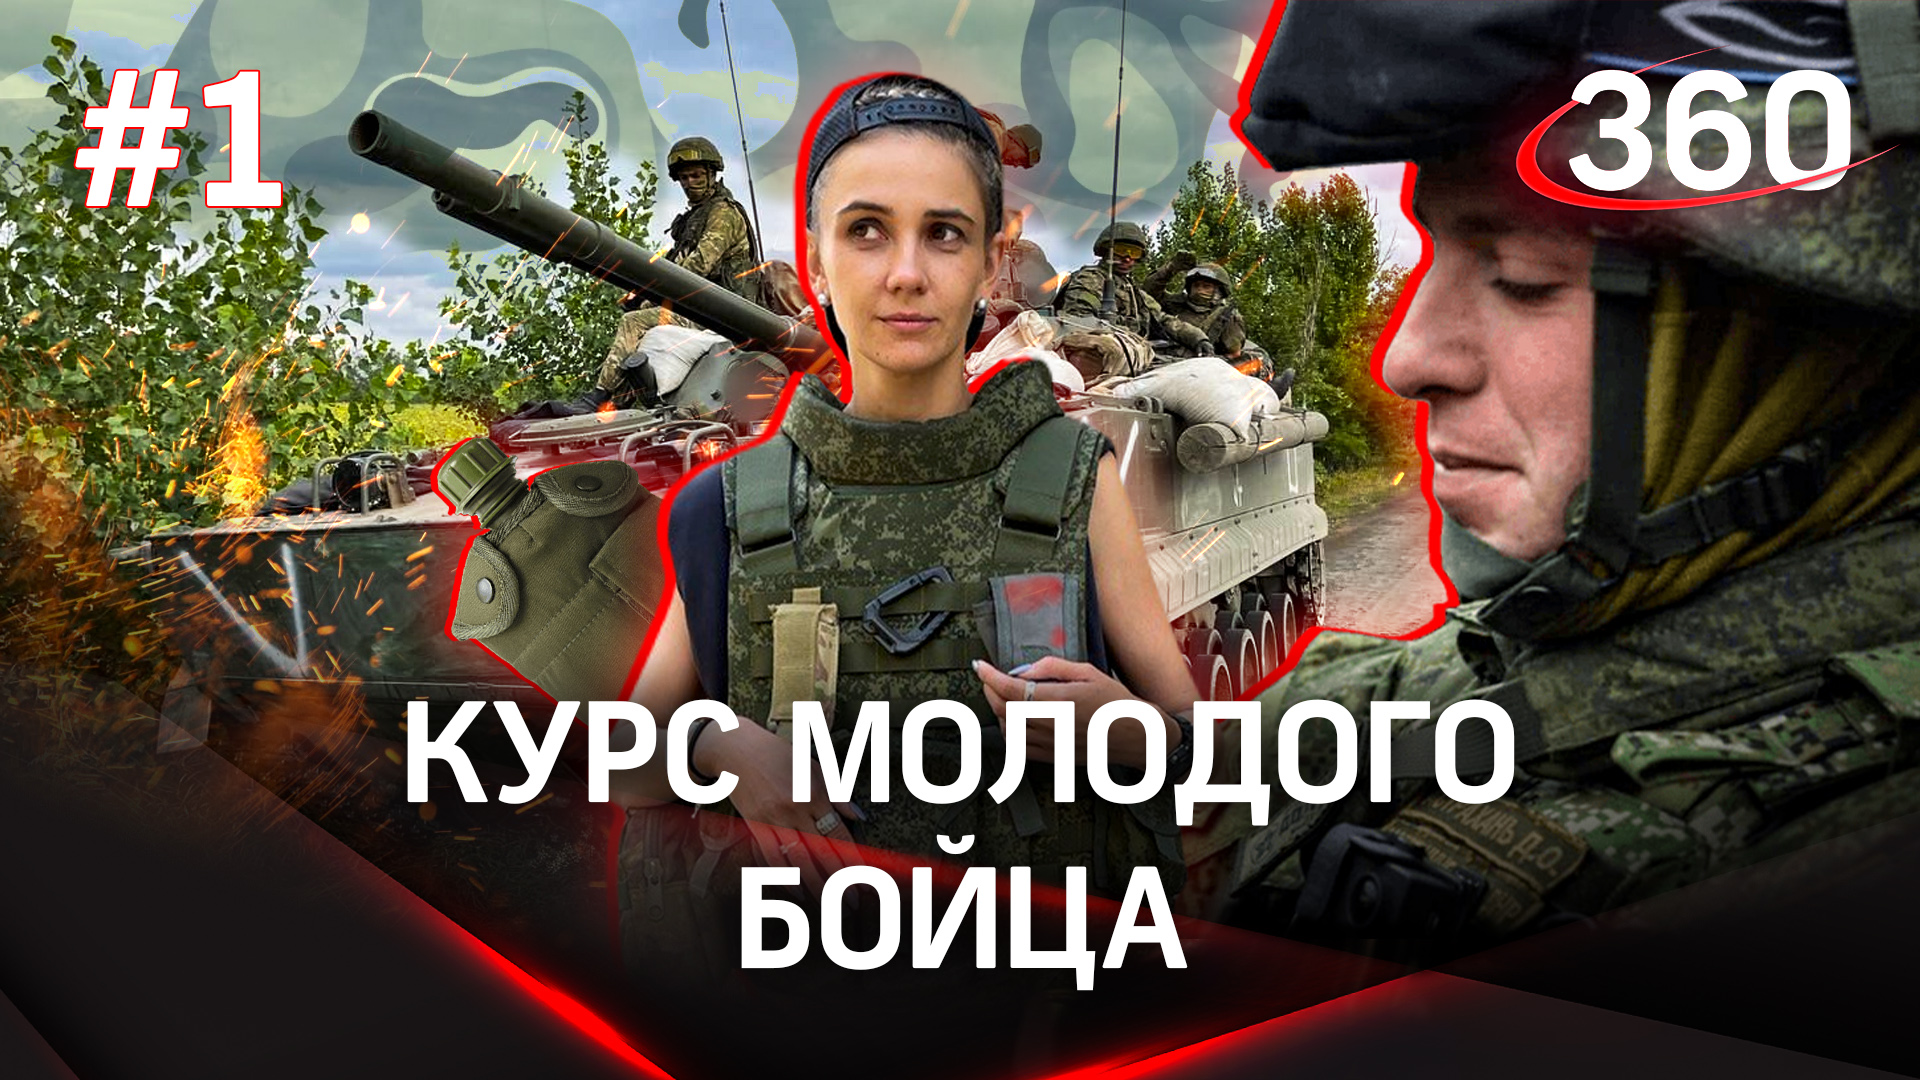 Мобилизация, добровольная миссия - сейчас в Донбасс едут многие. Как подготовиться?